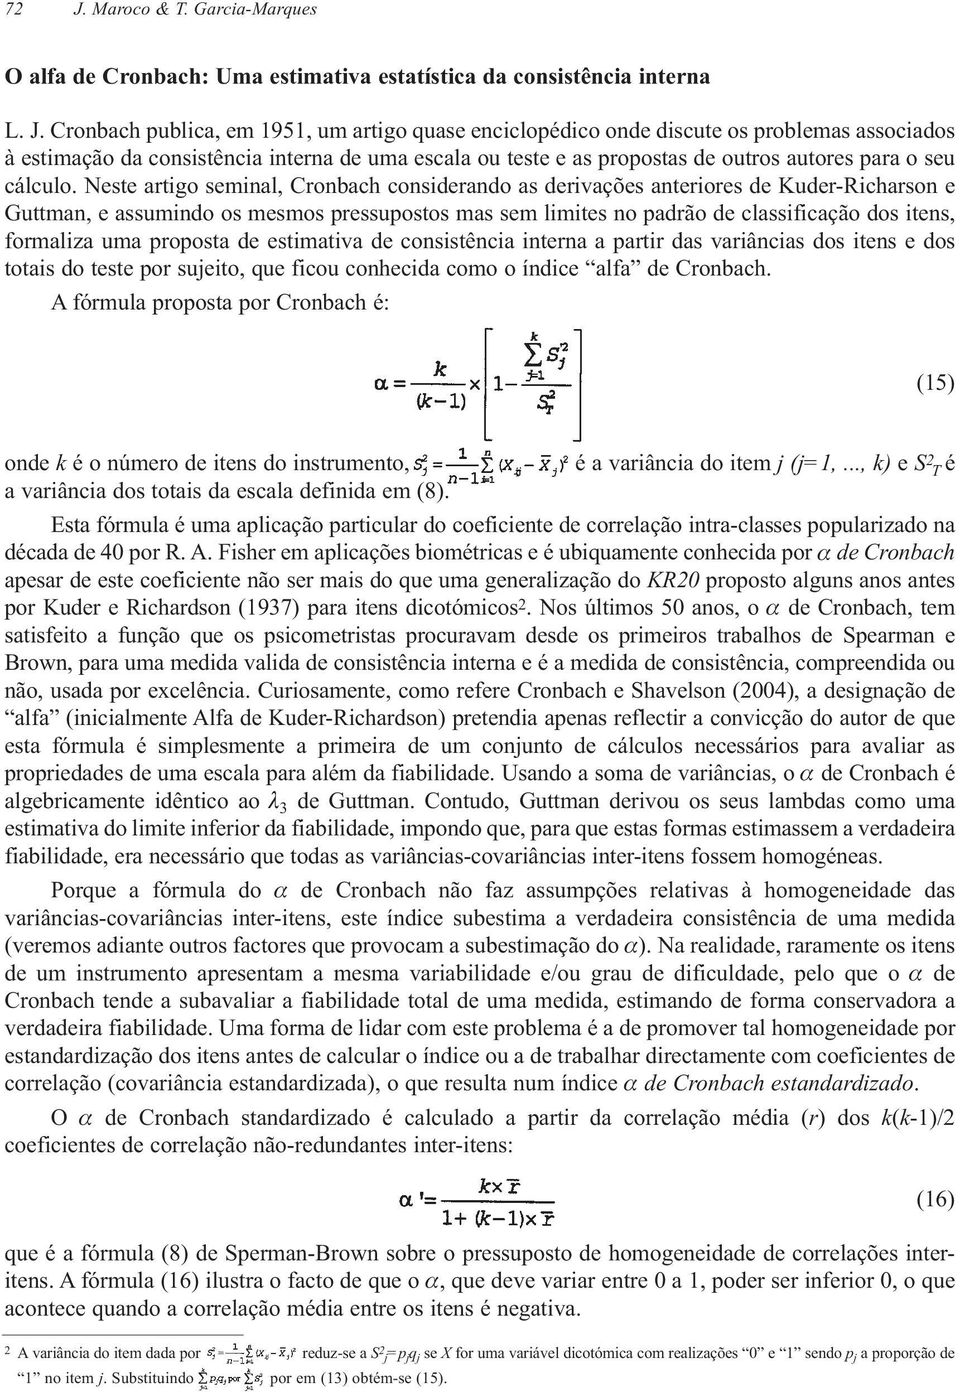 Neste artigo seminal, Cronbach considerando as derivações anteriores de Kuder-Richarson e Guttman, e assumindo os mesmos pressupostos mas sem limites no padrão de classificação dos itens, formaliza